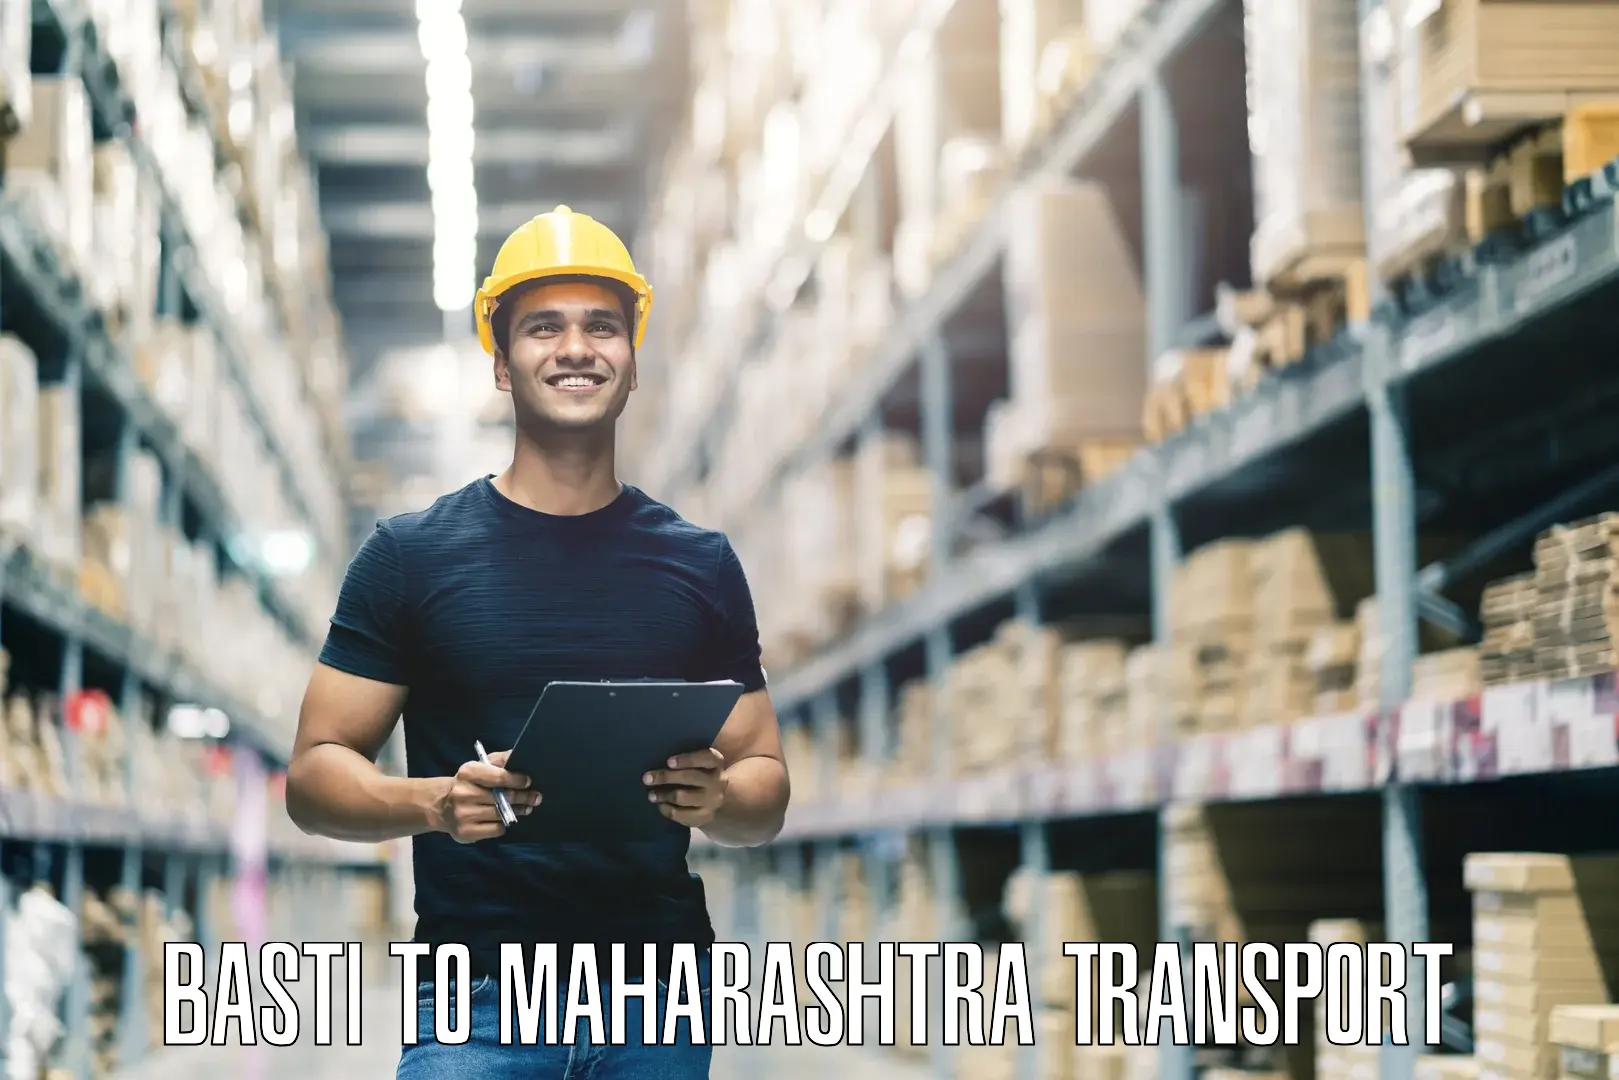 Lorry transport service Basti to Maharashtra